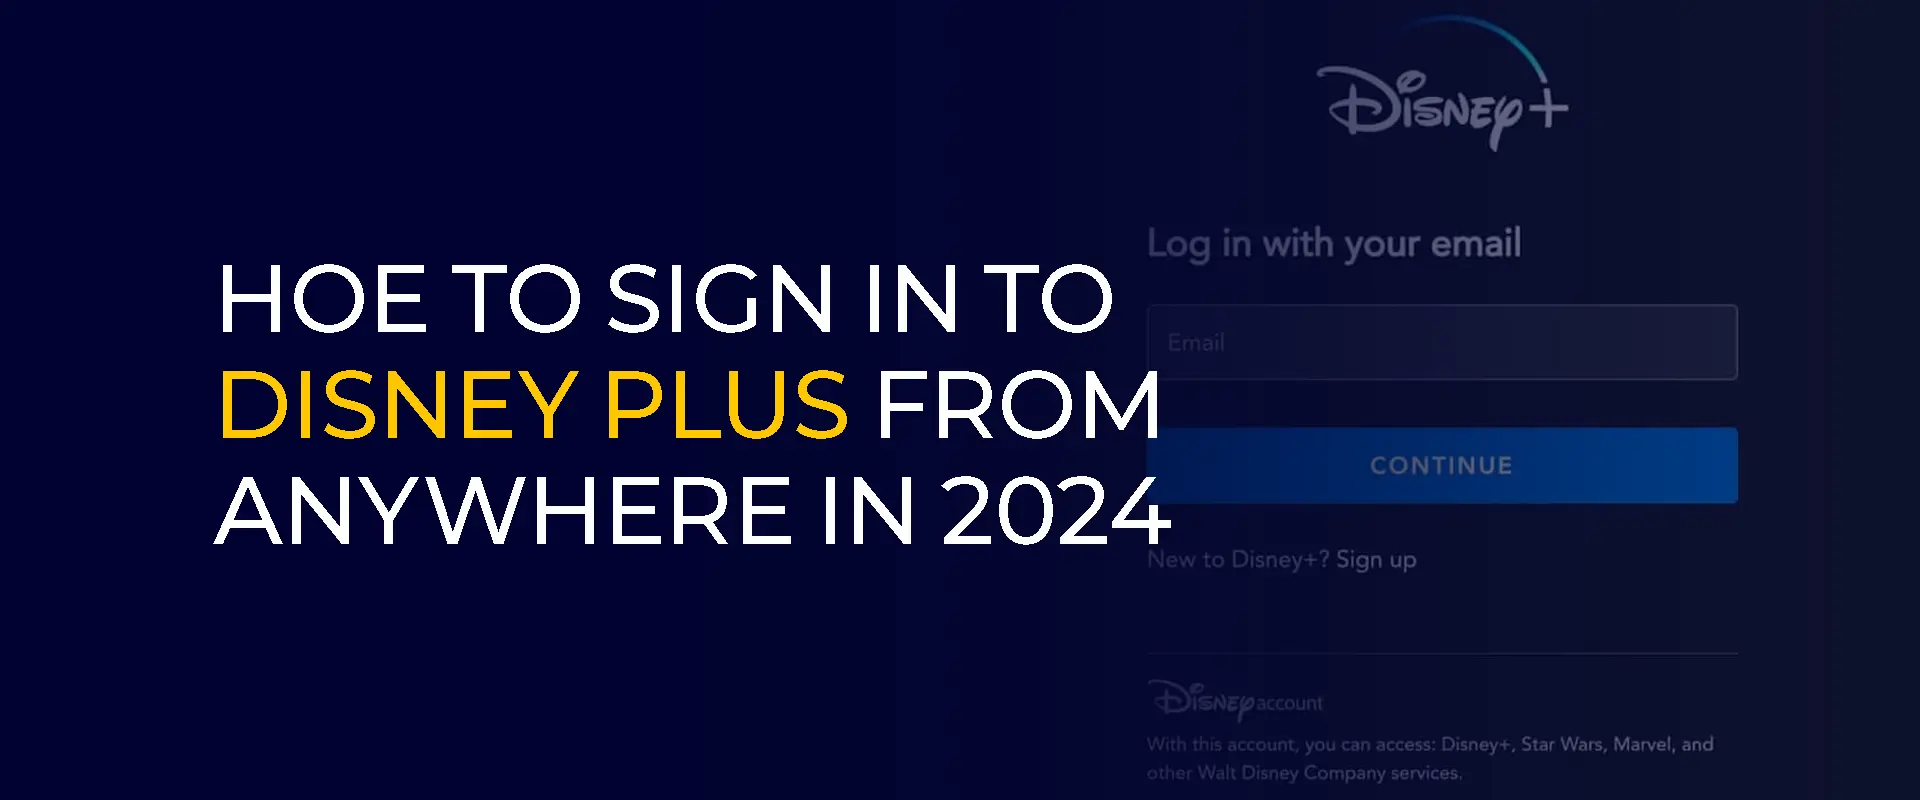 Hoe u zich in 2024 overal kunt aanmelden bij Disney Plus